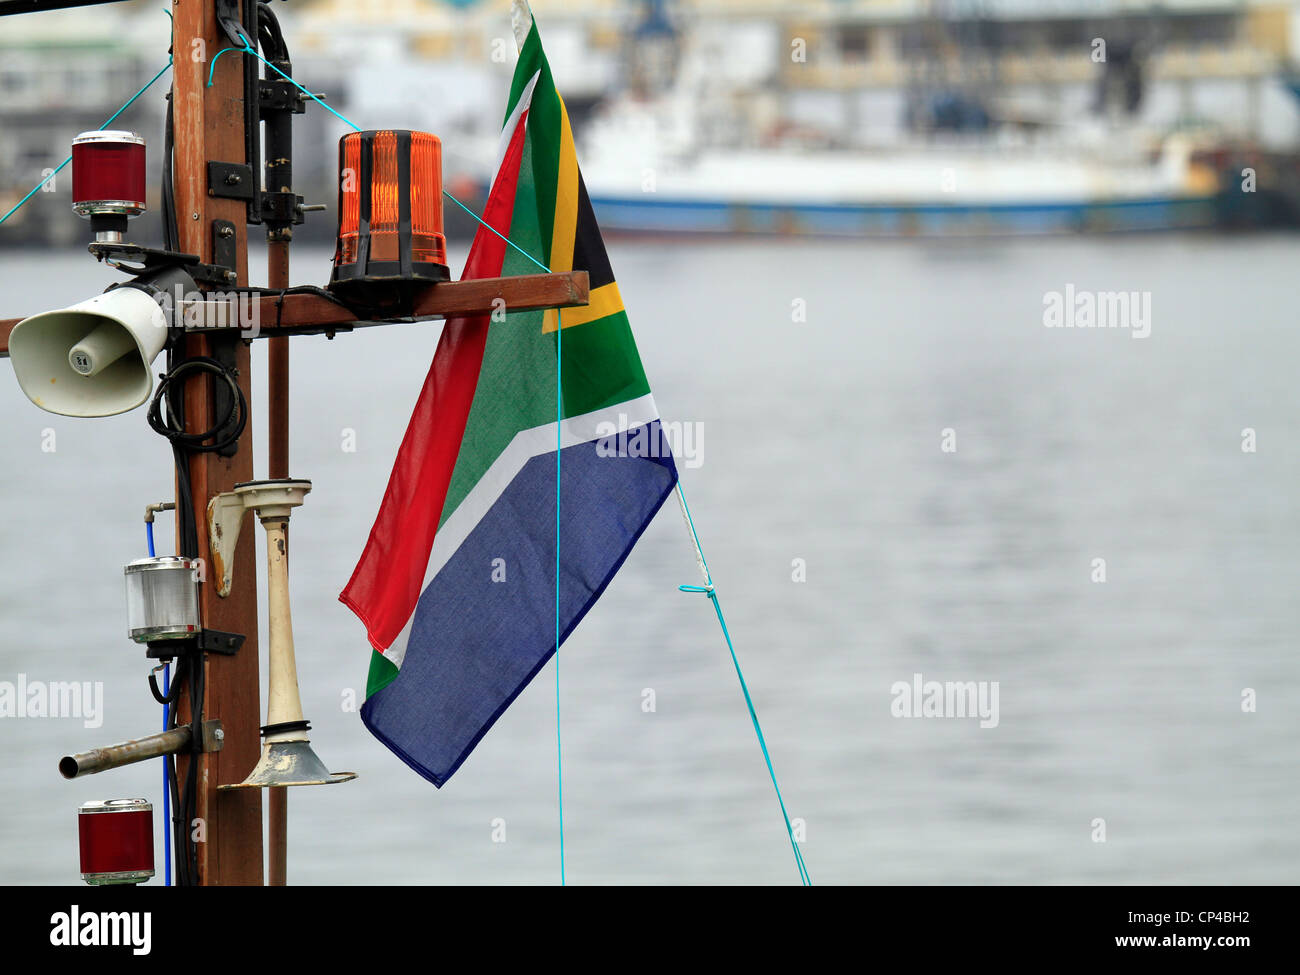 Mast am Boot festgemacht an der V&A Waterfront in Kapstadt mit Nebelhorn, Navigation Licht und einem südafrikanischen Flagge. Stockfoto